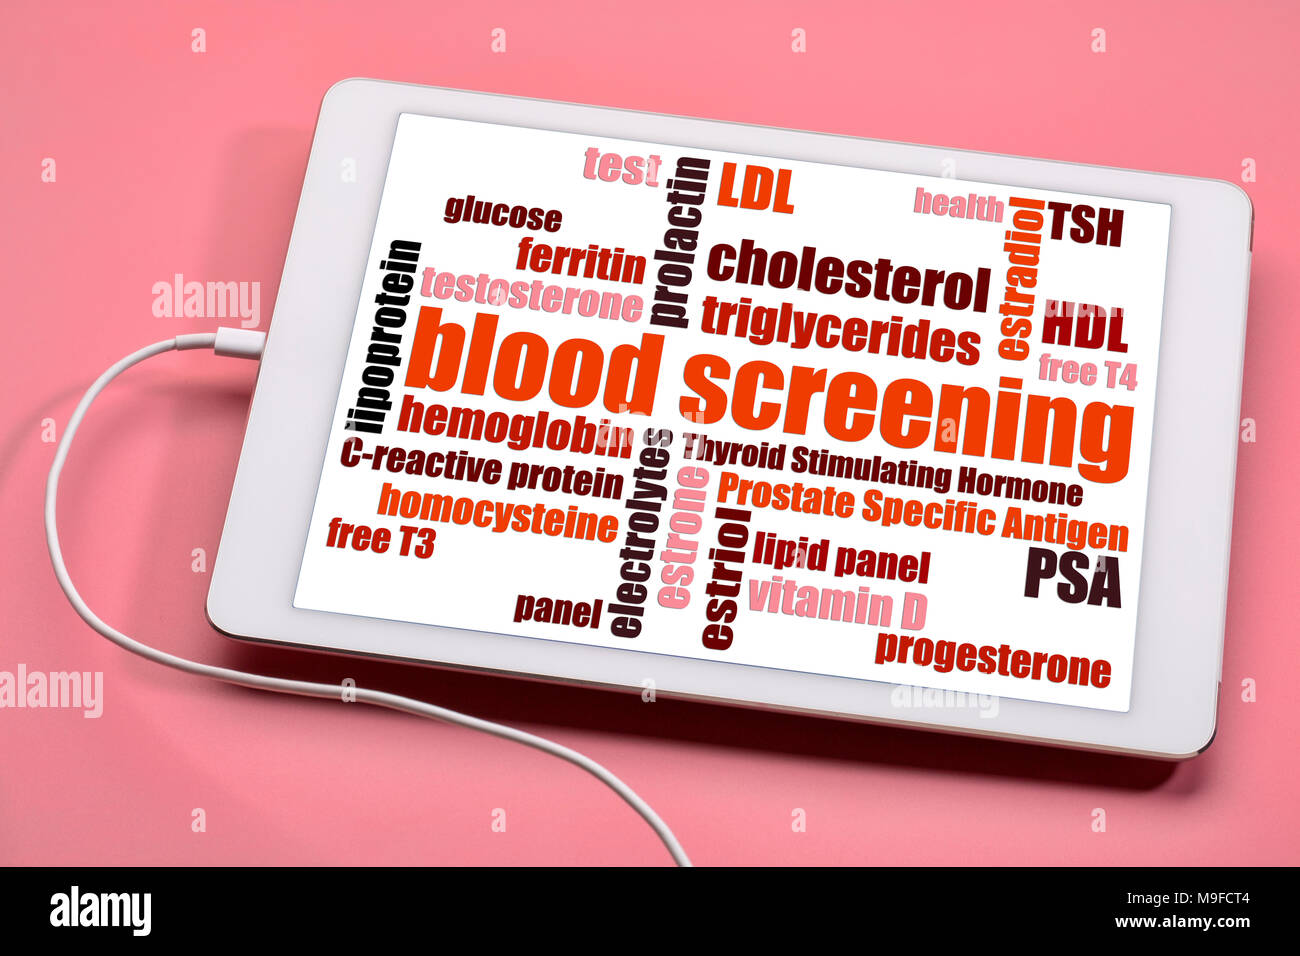 Blut Screening der vorbeugenden Gesundheit Konzept - Wort Wolke auf einer digitalen Tablet Stockfoto